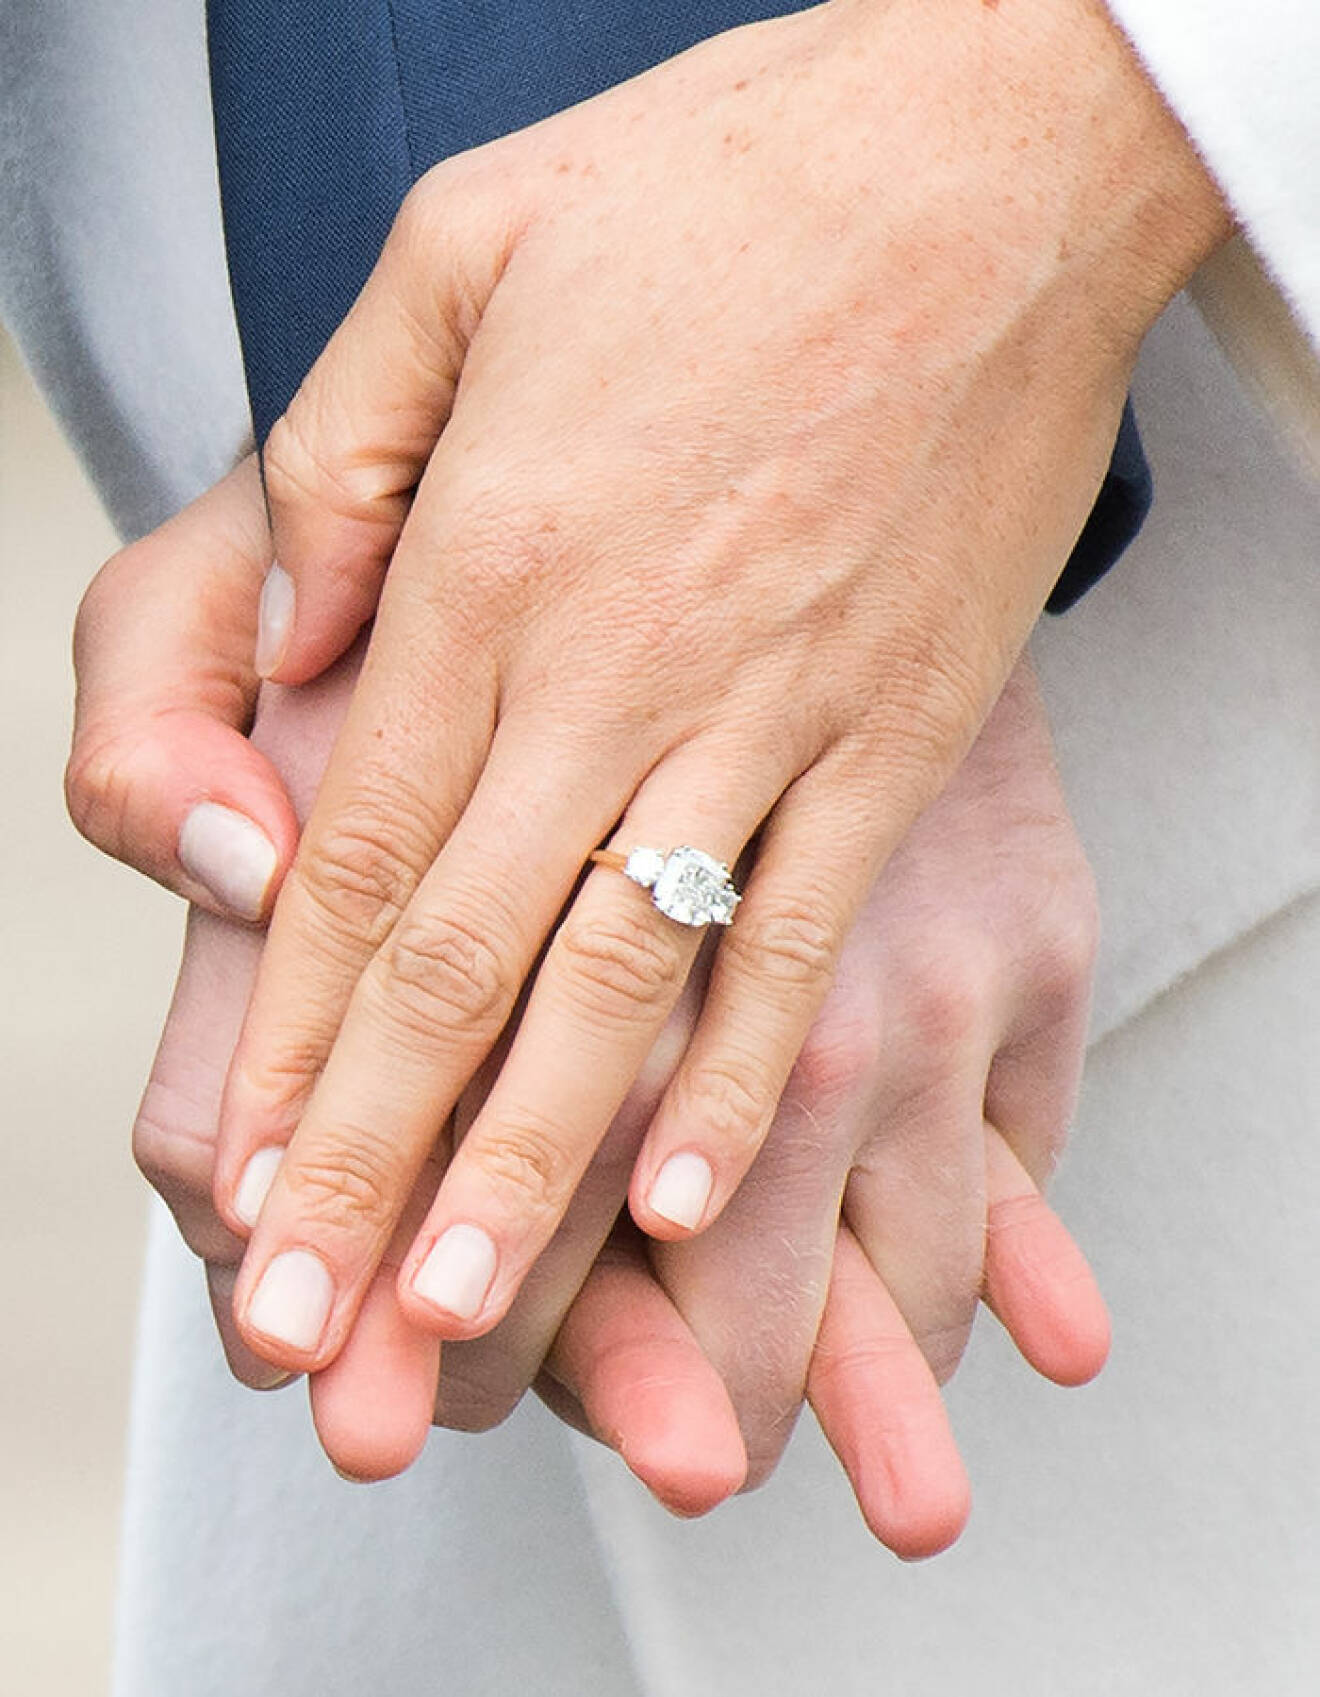 Meghan Markle och prins Harry gifter sig den 19 maj 2018. Meghan Markles förlovningsring med tre diamanter sticker ut.